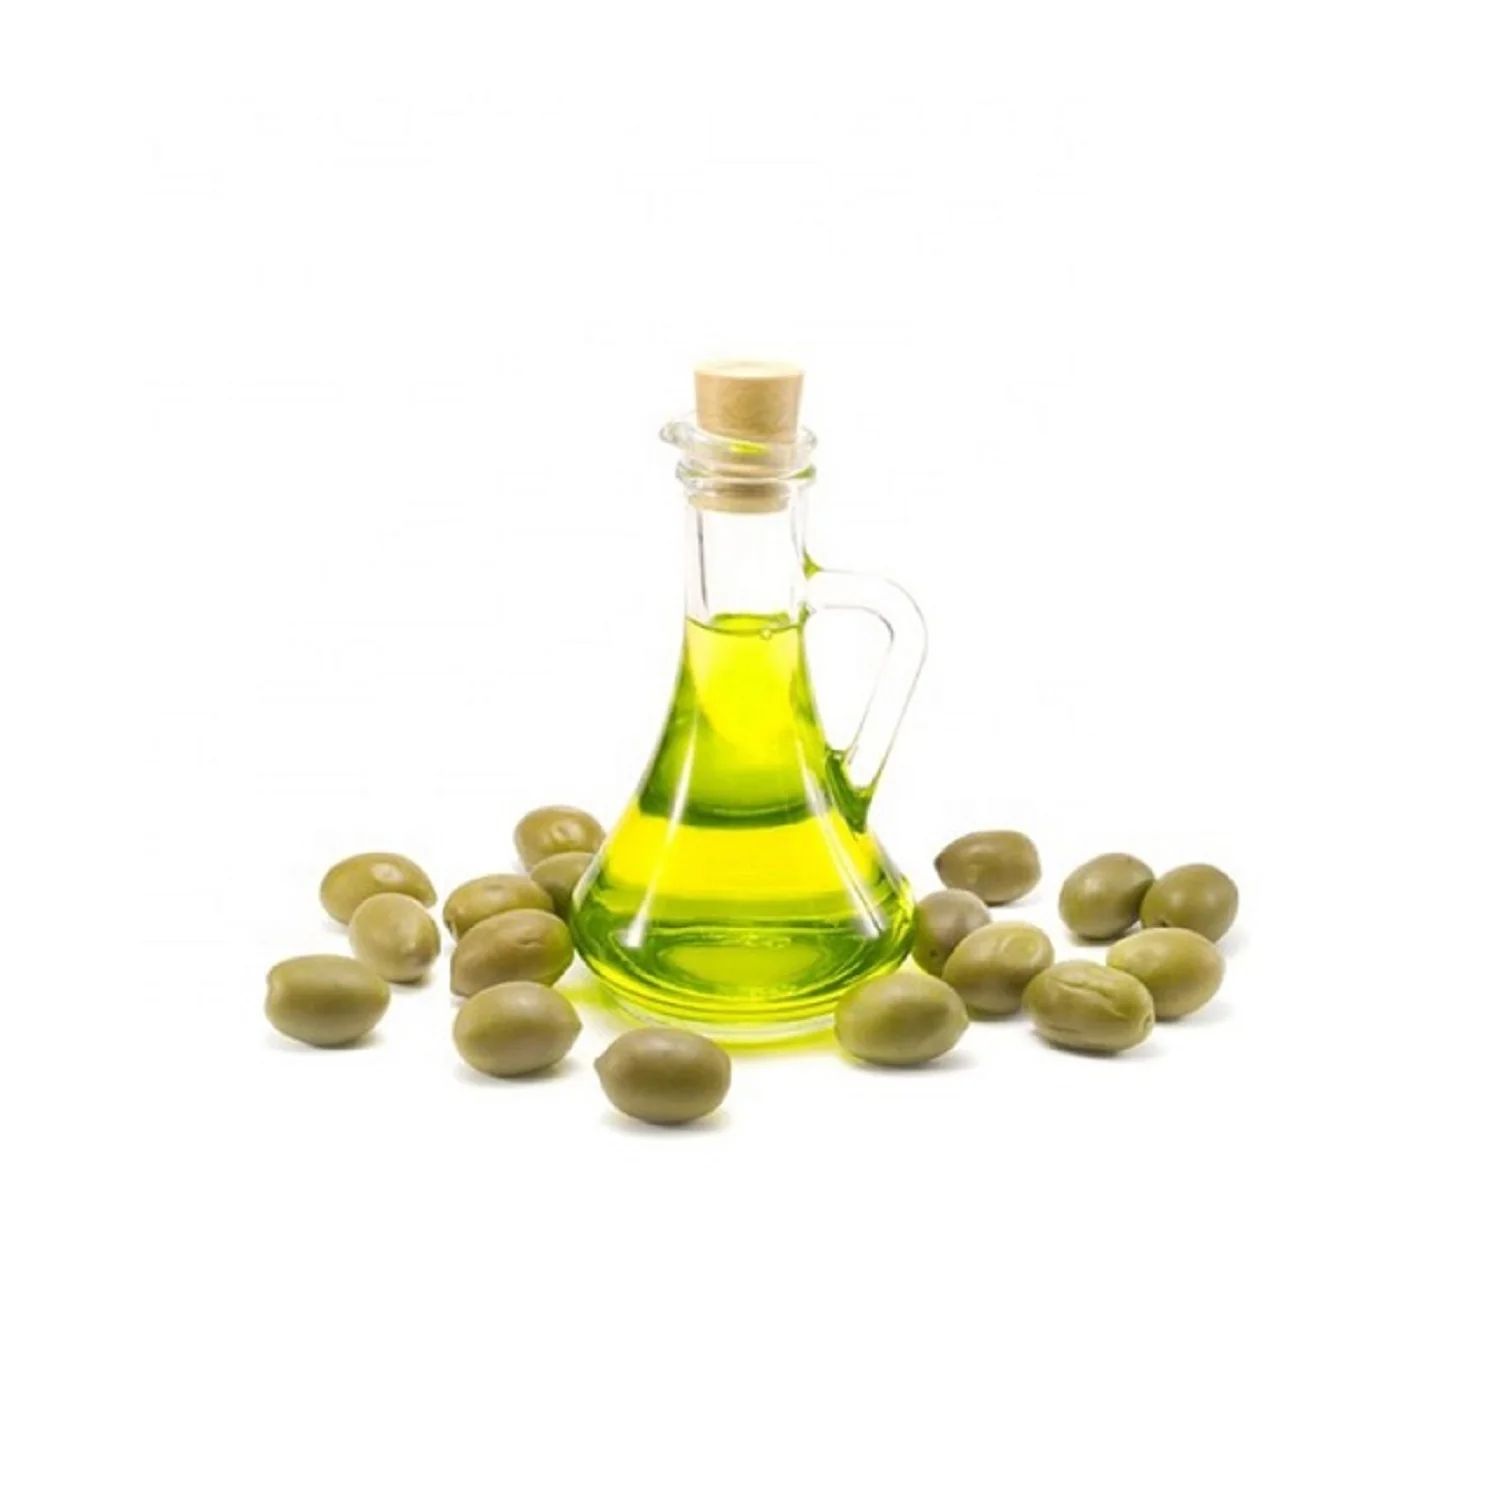 Оливковое масло первого отжима, высокое качество, оливковое масло первого отжима для ресторанов, пластиковая бутылка 5 л